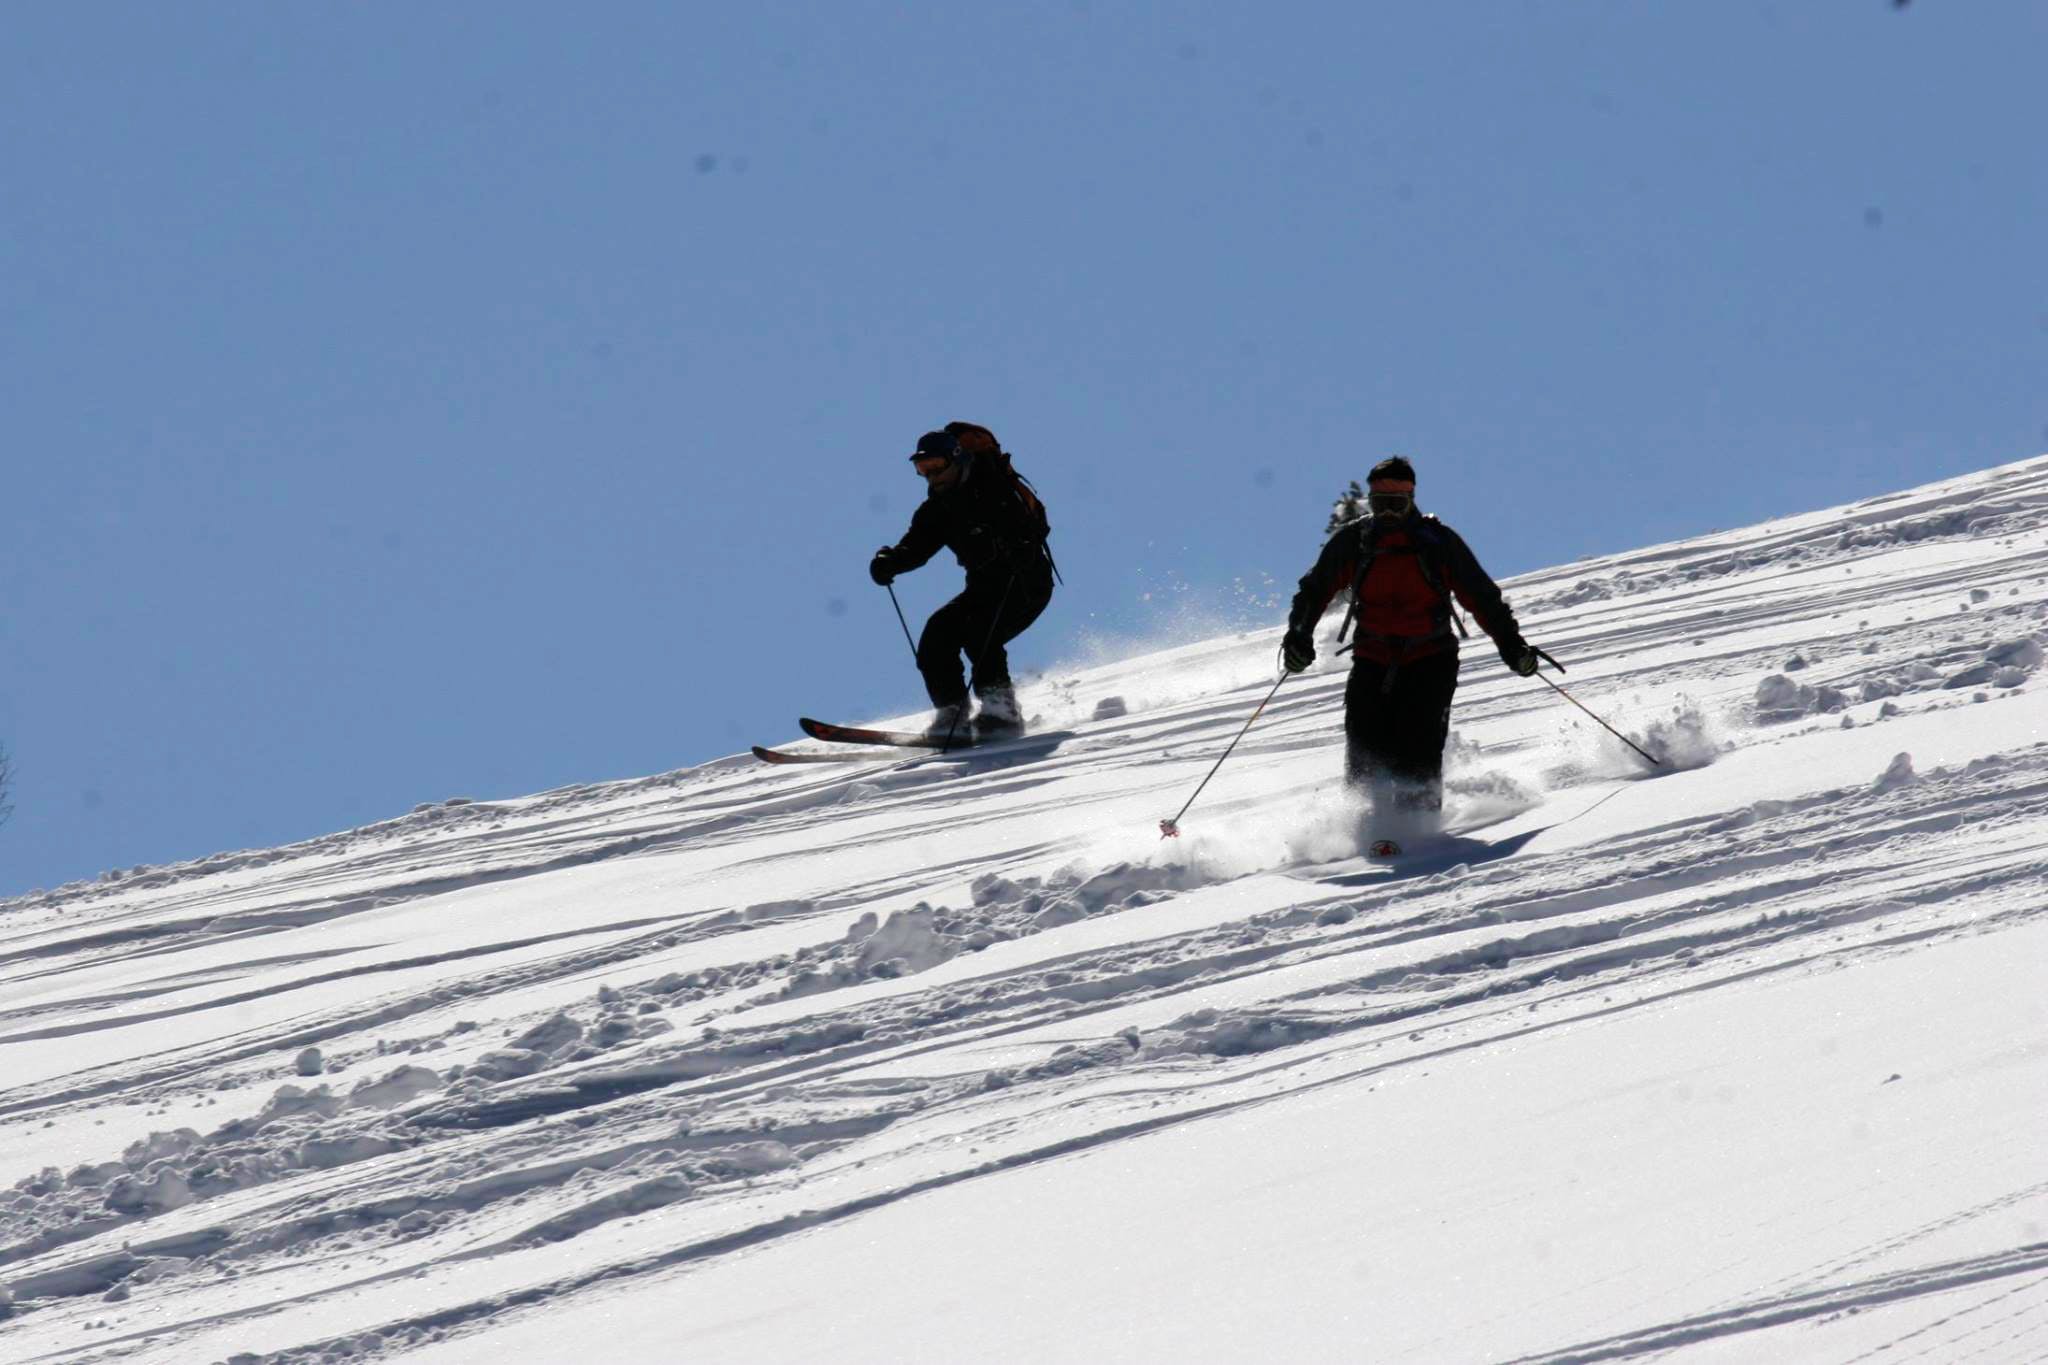 Snow,Skiing,Ski,Winter,Ski touring,Recreation,Winter sport,Ski mountaineering,Slope,Piste